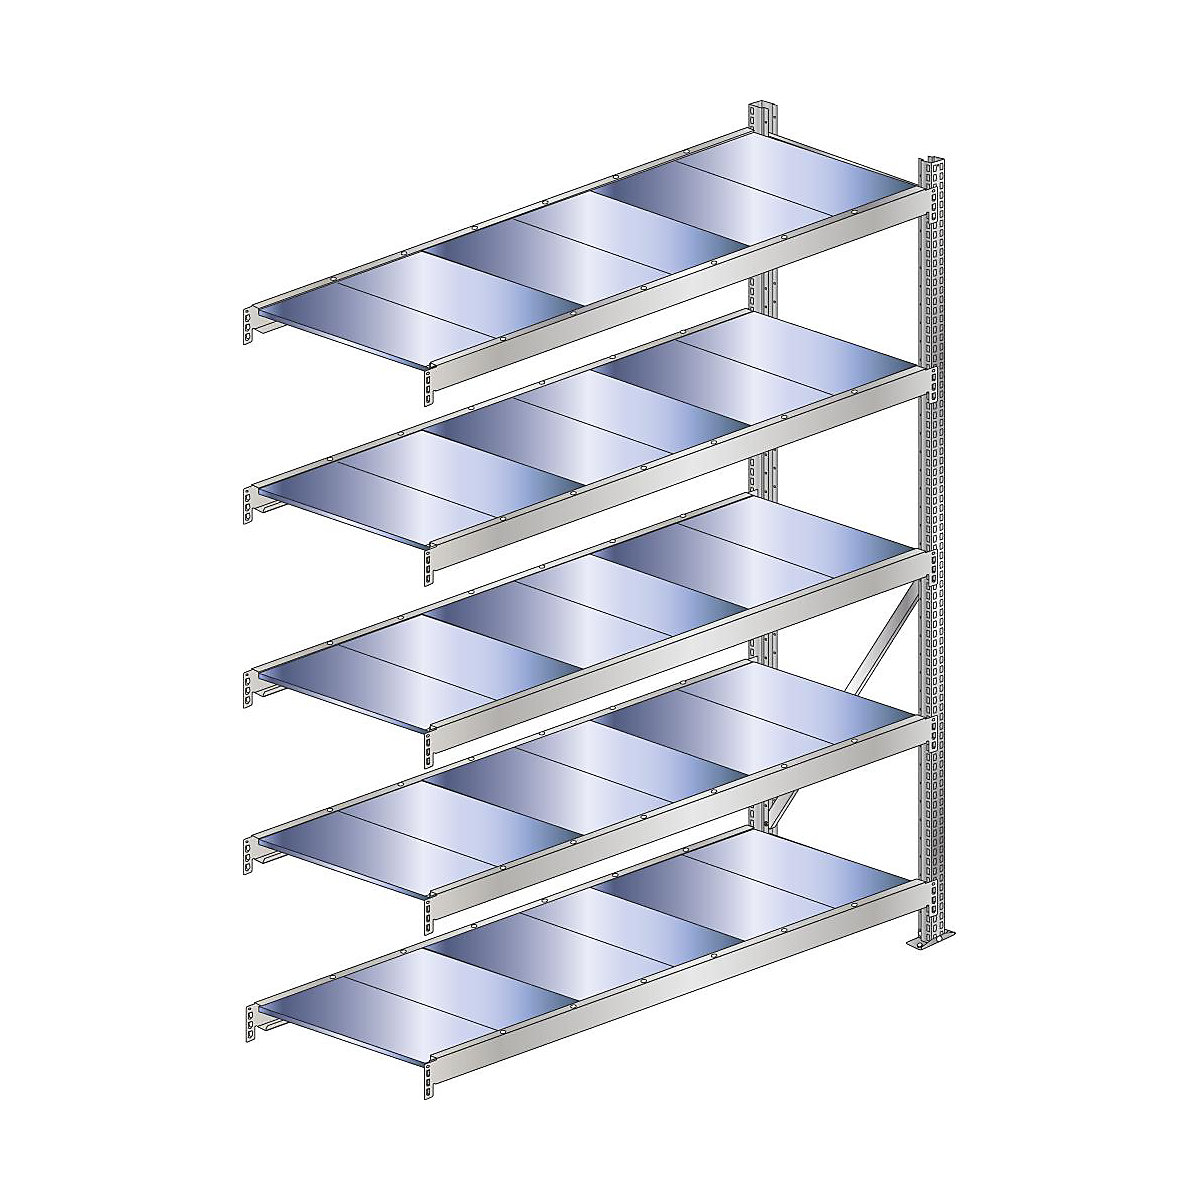 Wide span shelf unit, shelf load 500 kg – SCHULTE, shelf width 2250 mm, extension shelf unit, height 3000 mm, depth 500 mm